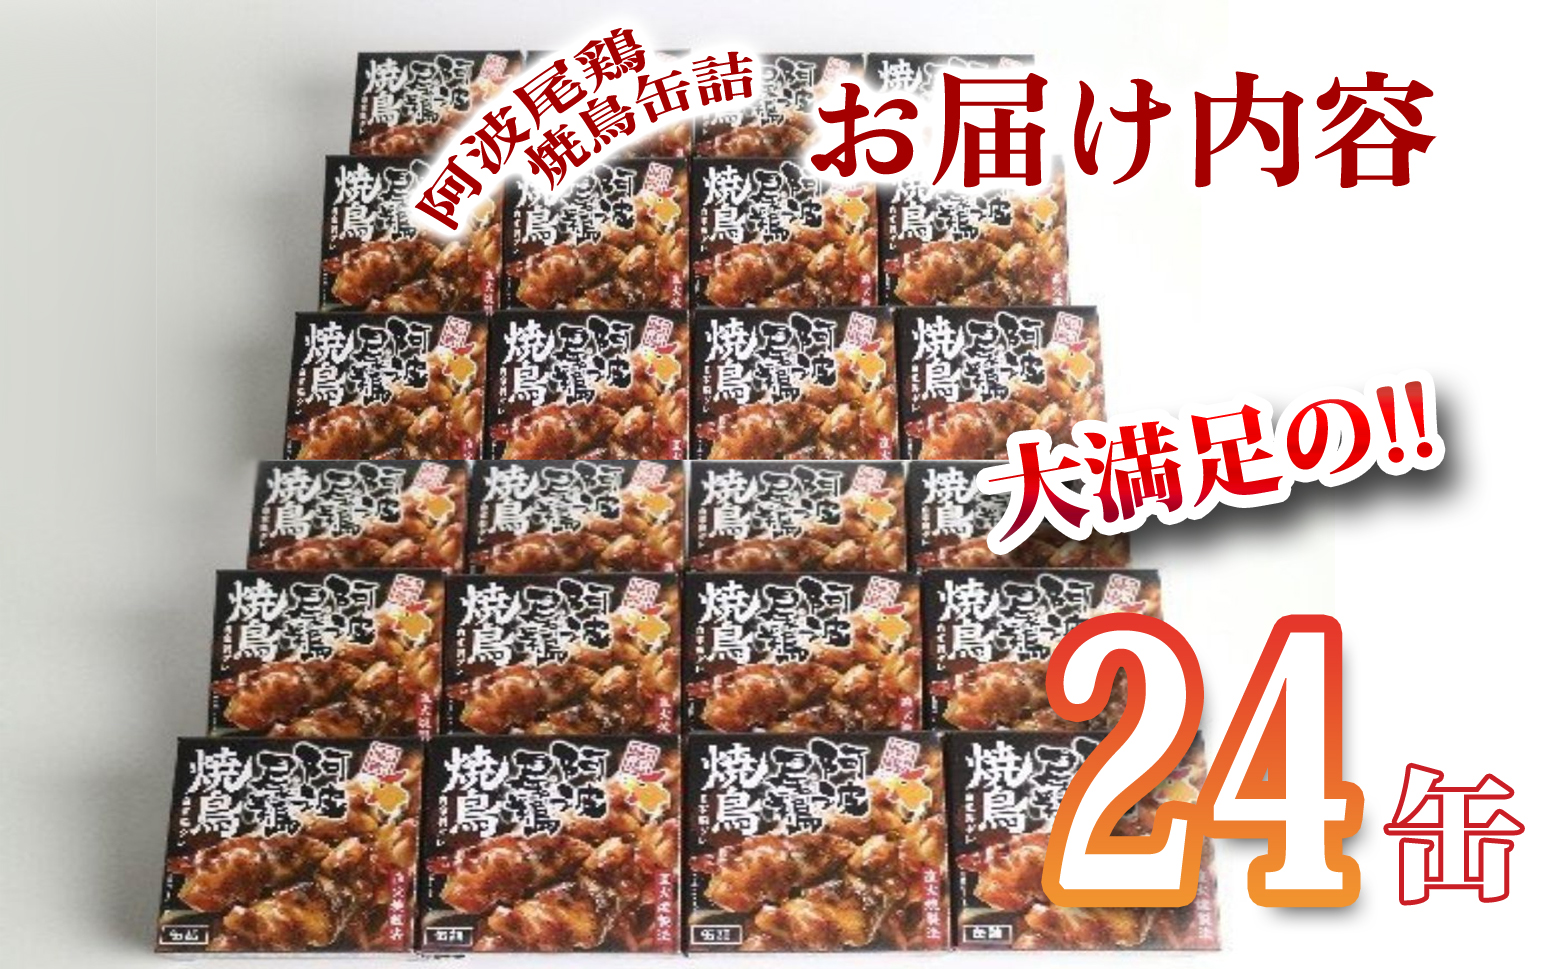 阿波尾鶏焼鳥缶詰セット 缶詰 焼鳥 阿波尾鶏 24缶 徳島 地鶏 あわおどり